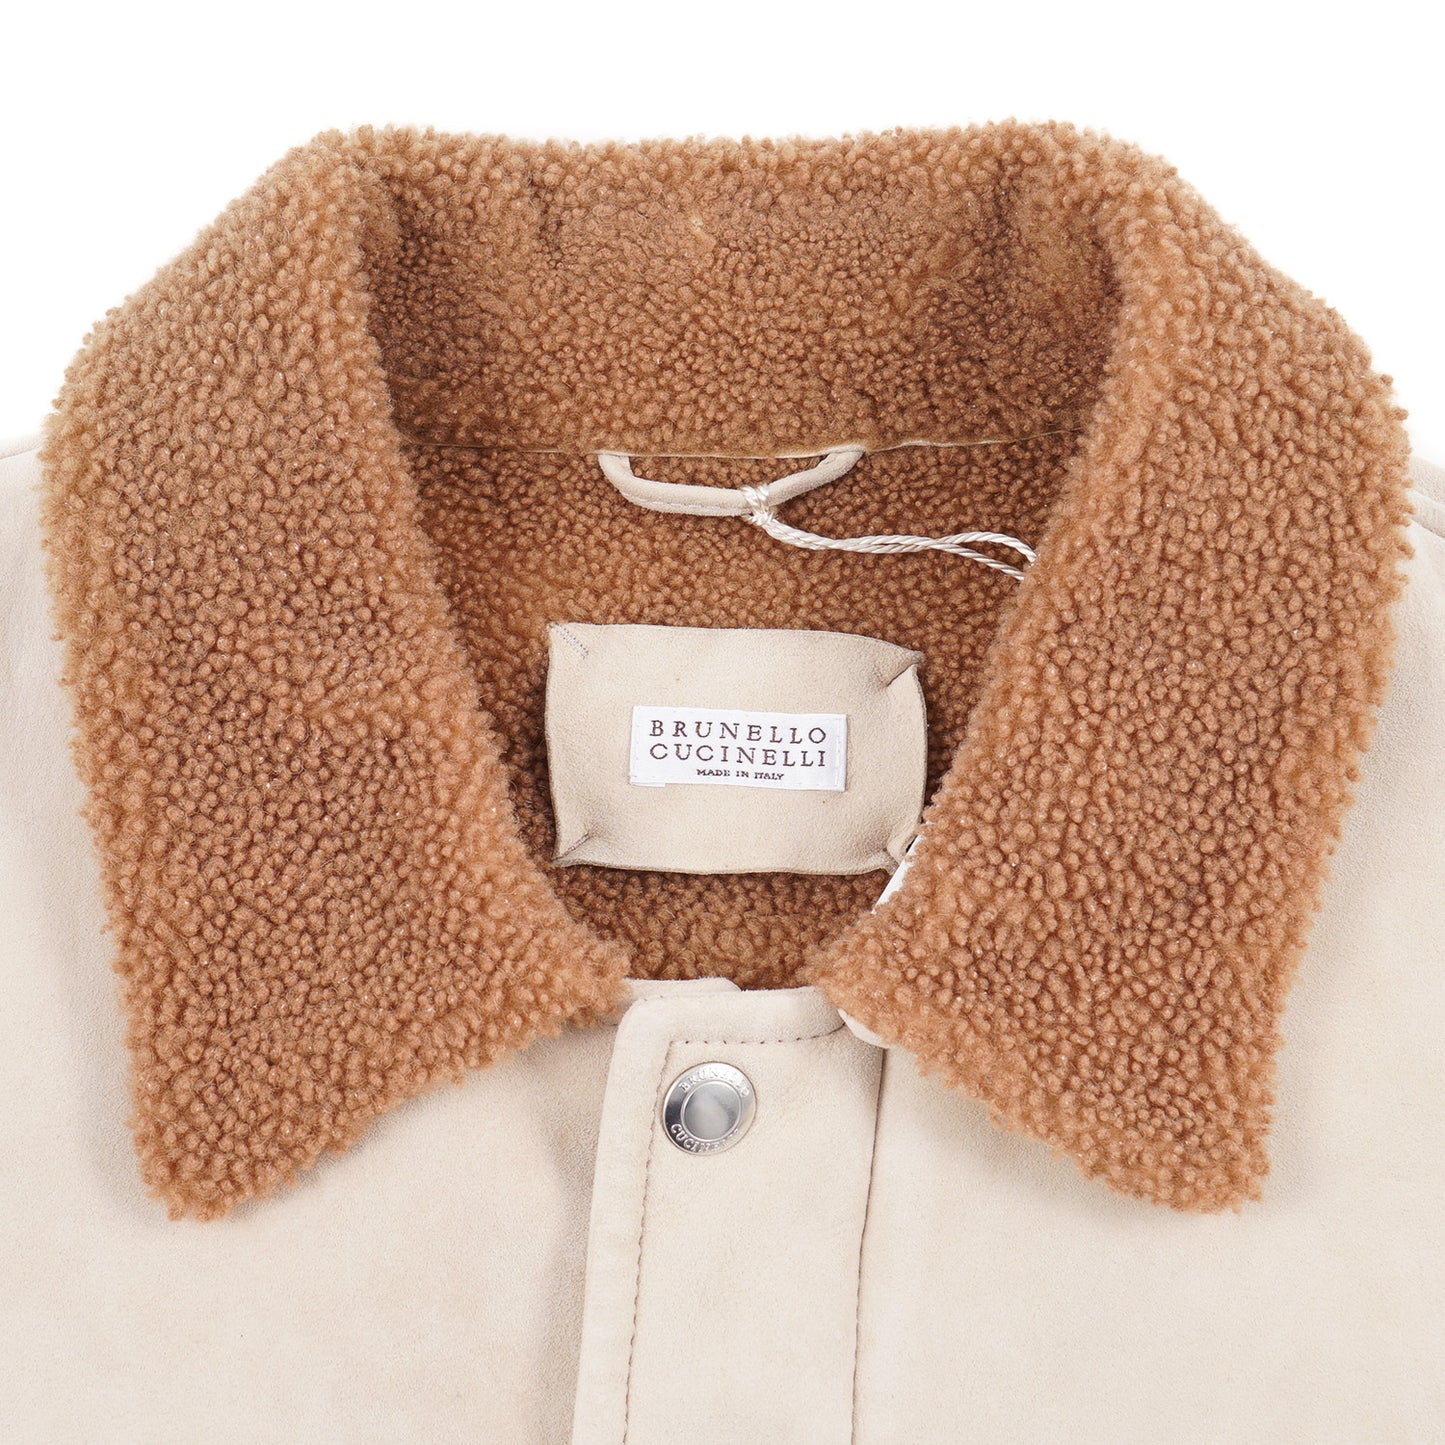 Brunello Cucinelli Shearling Leather Field Jacket - Top Shelf Apparel